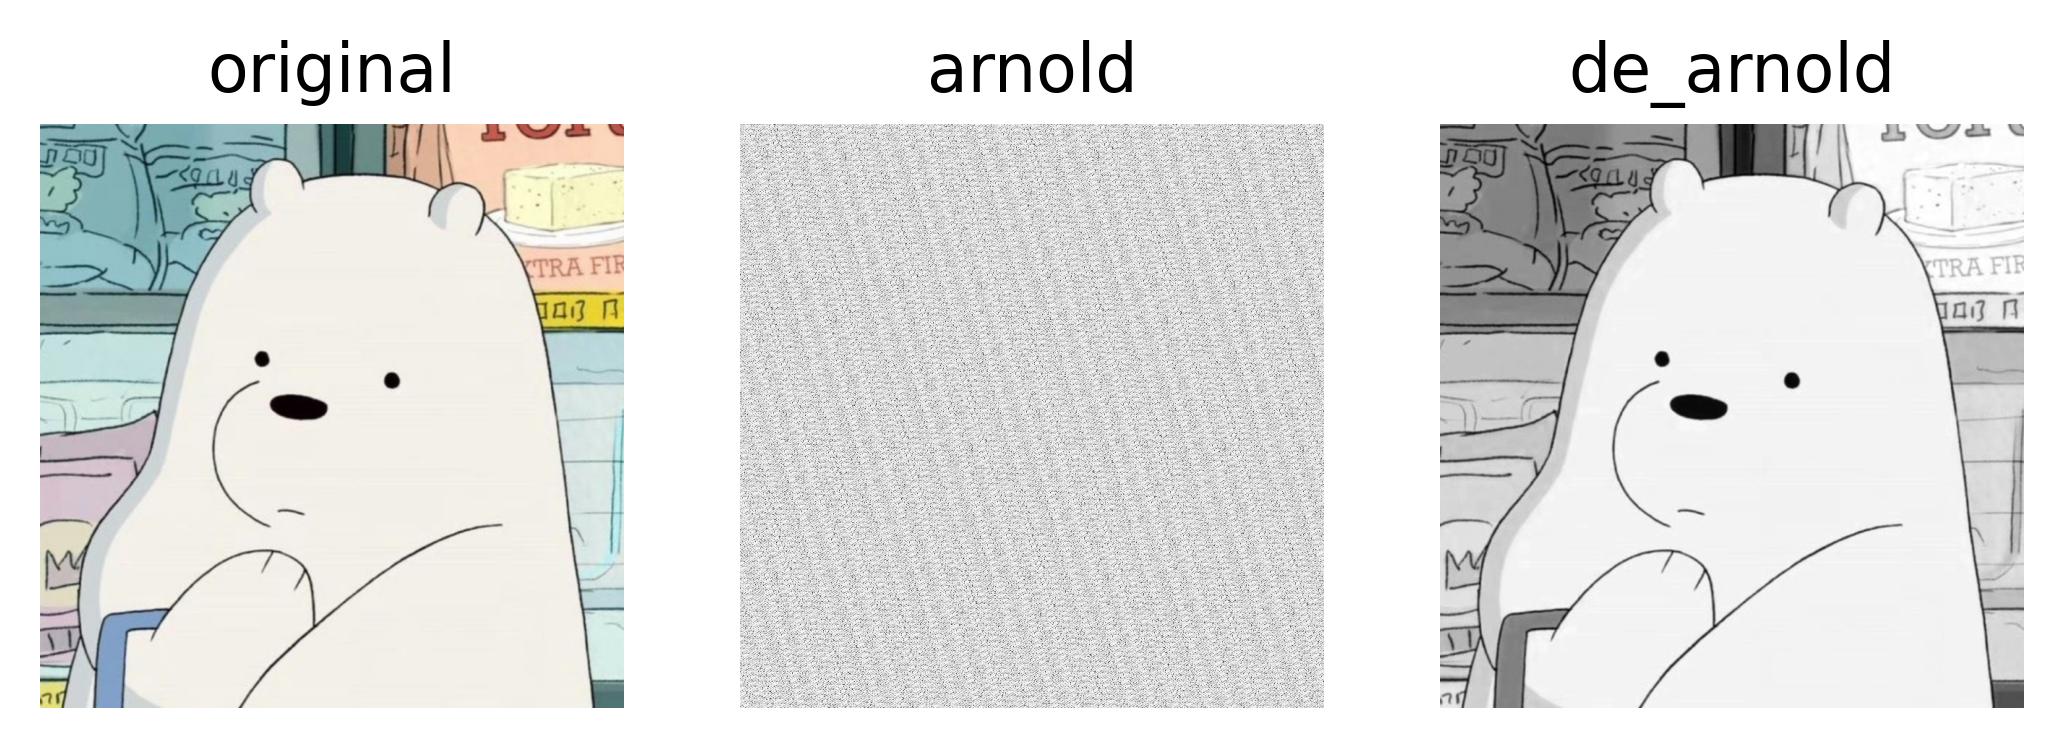 数字水印 | Arnold 变换的 Python 代码实现（灰度图版）